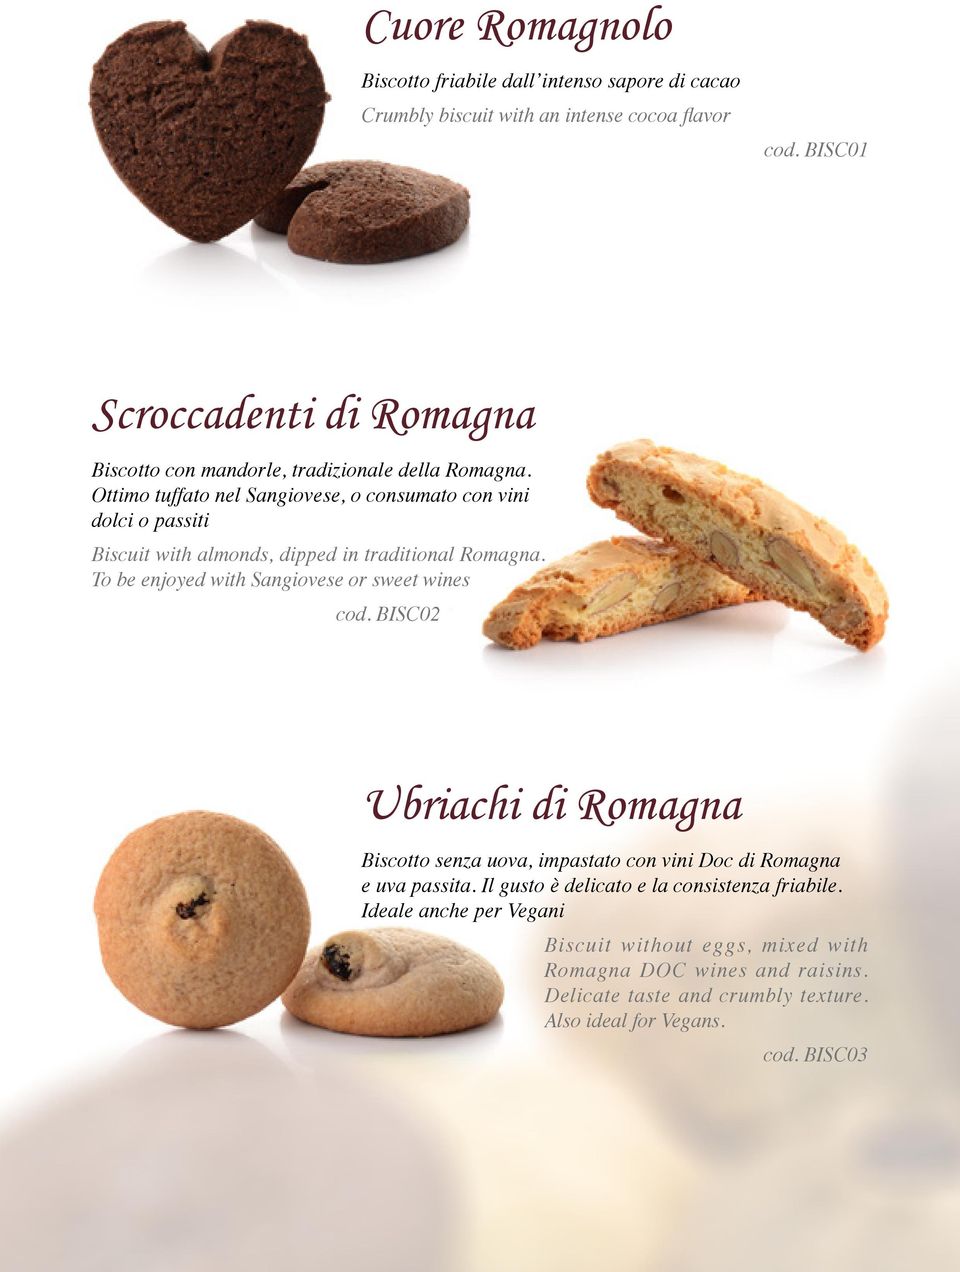 Ottimo tuffato nel Sangiovese, o consumato con vini dolci o passiti Biscuit with almonds, dipped in traditional Romagna.